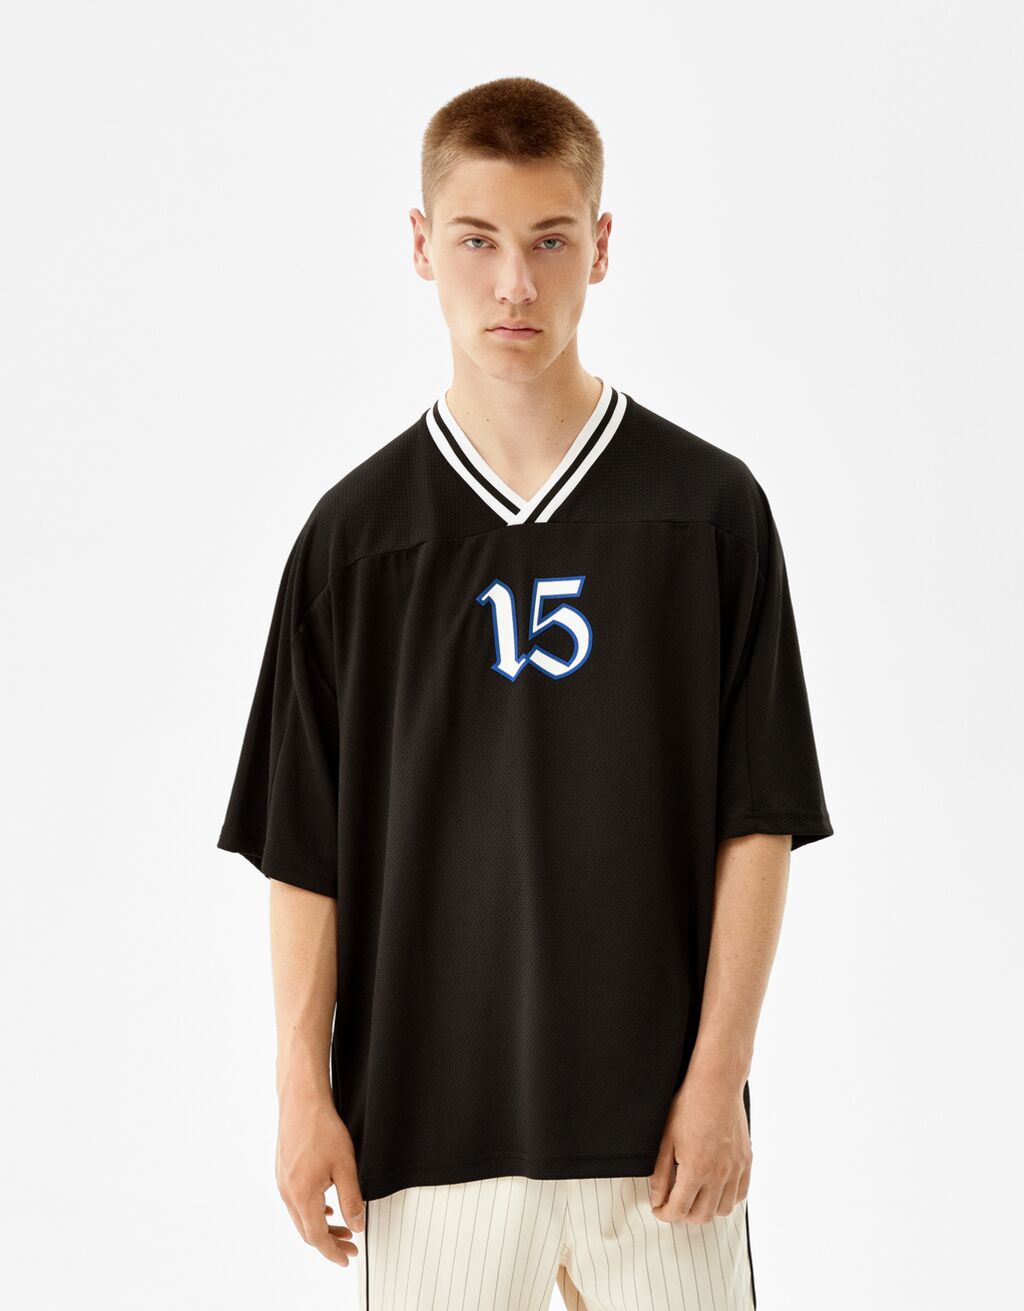 Basketbalshirt met korte mouw en print